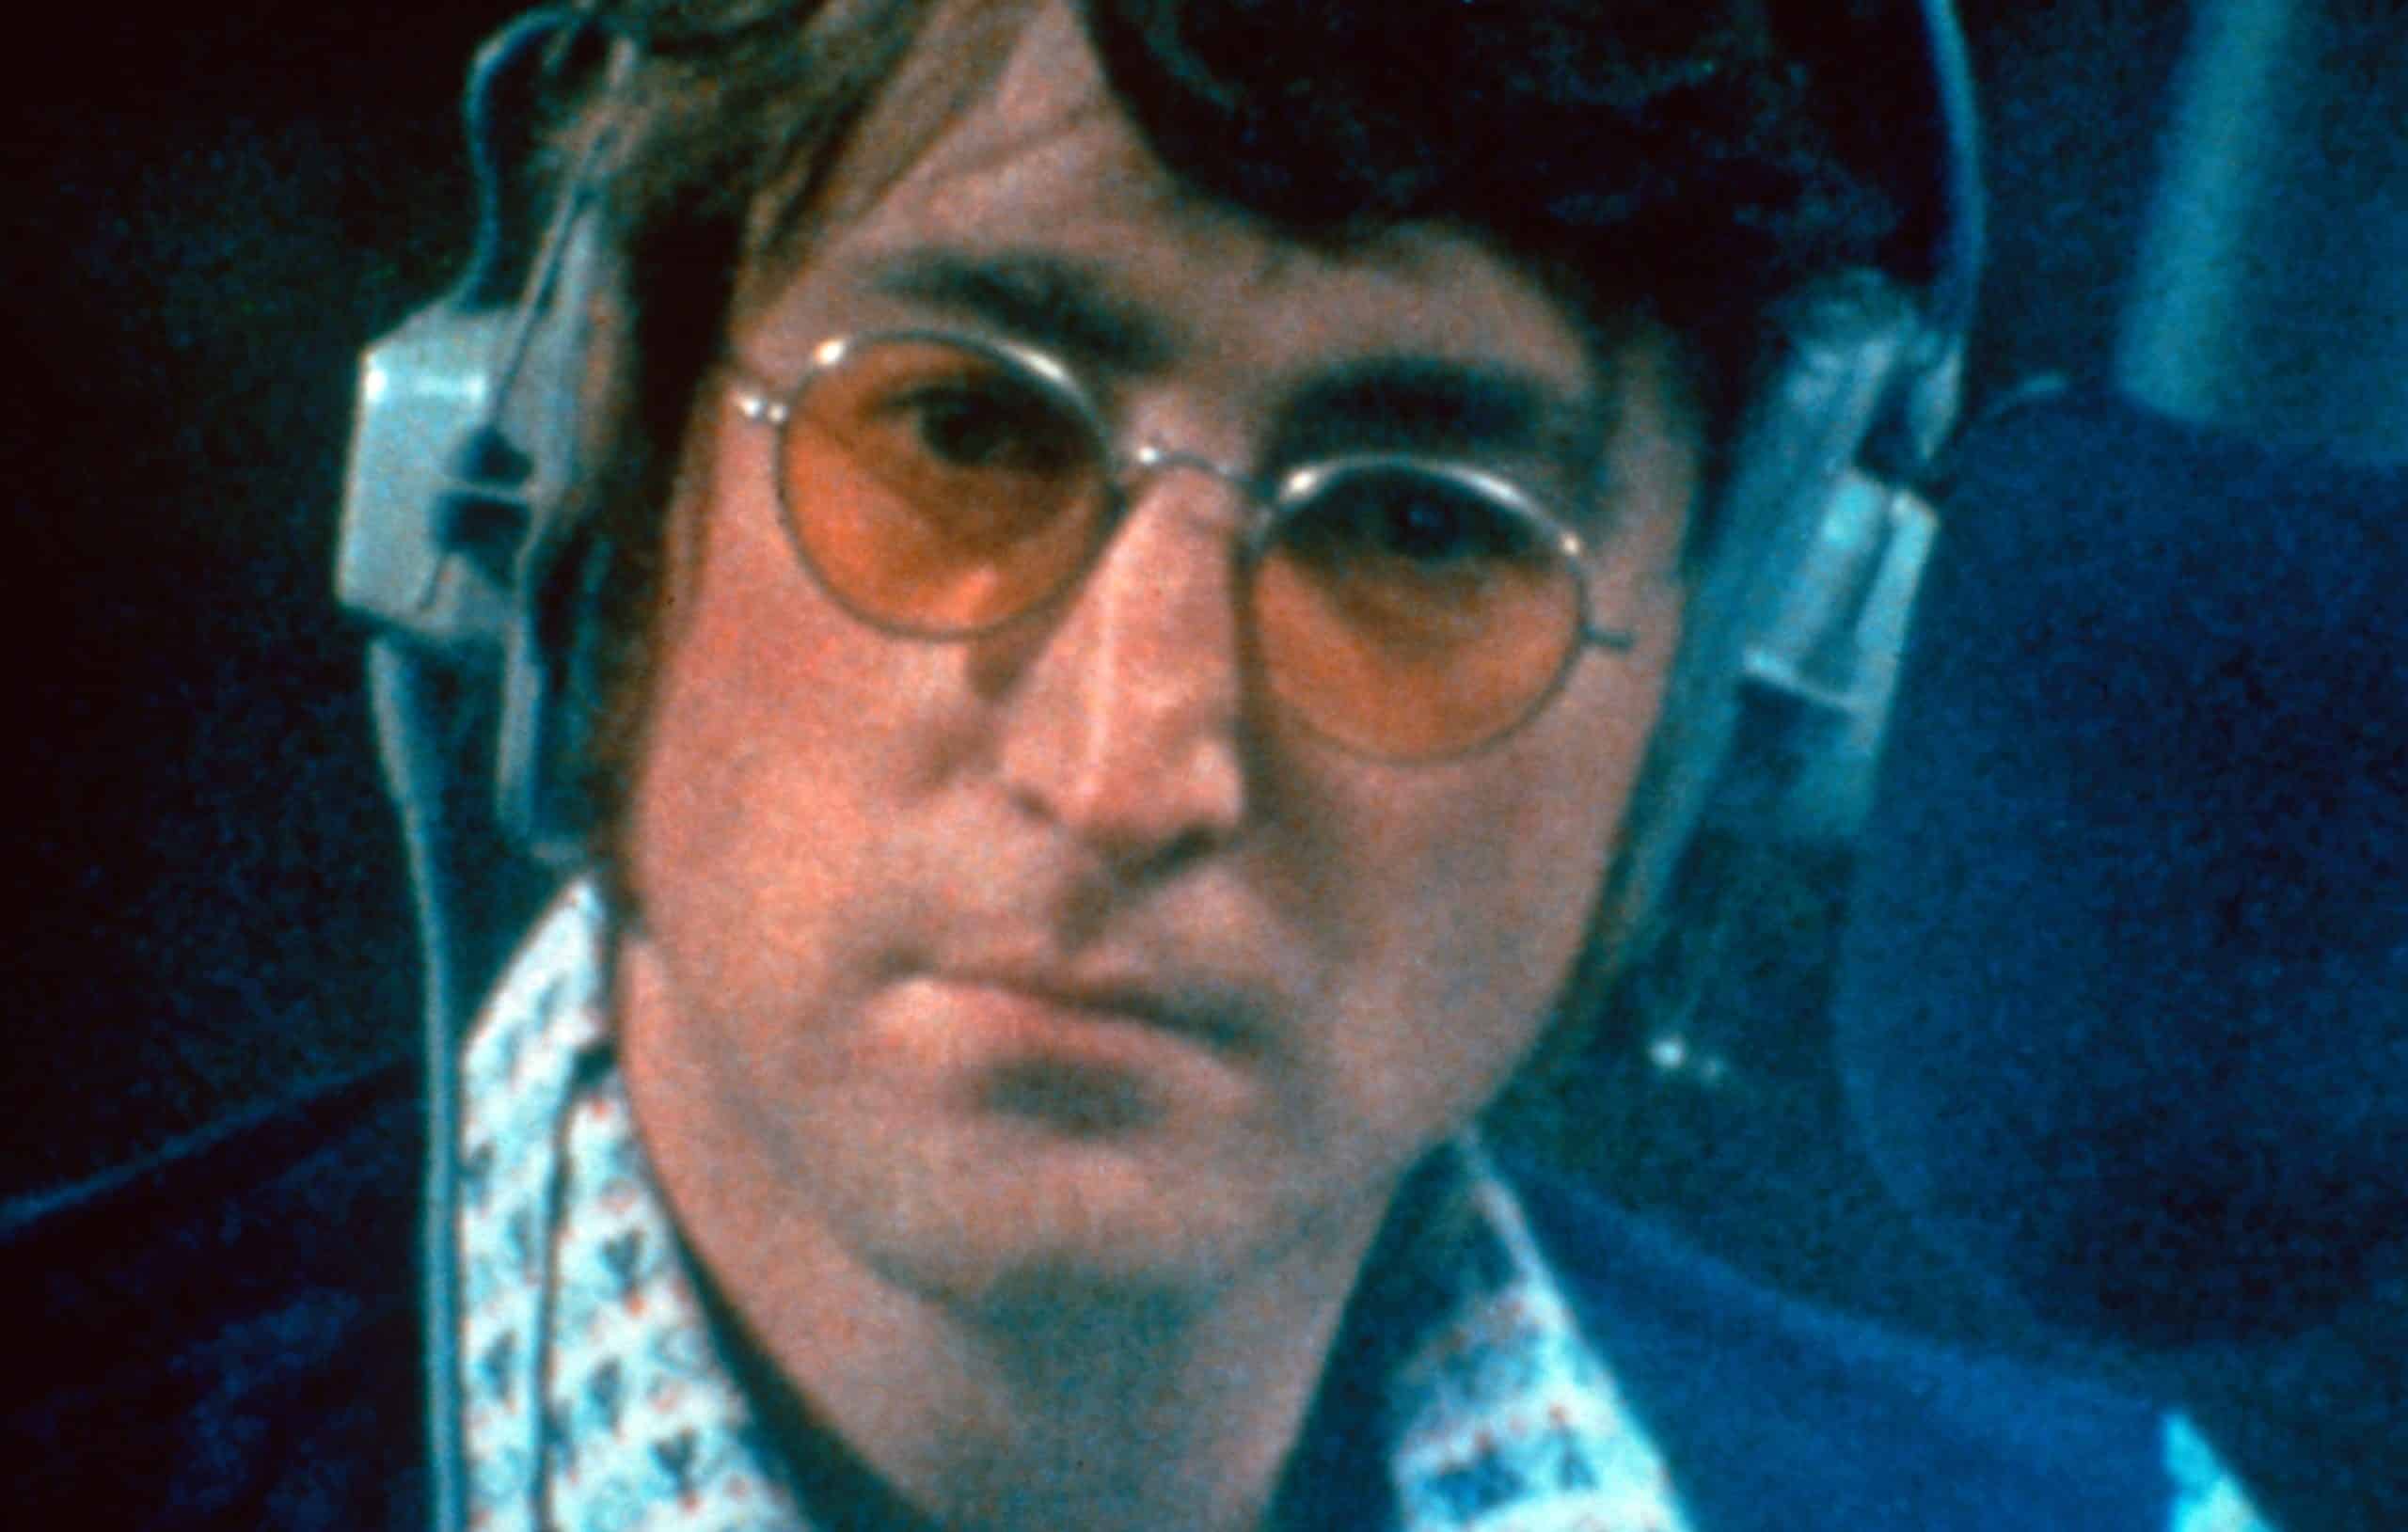 IMAGINE: JOHN LENNON, John Lennon